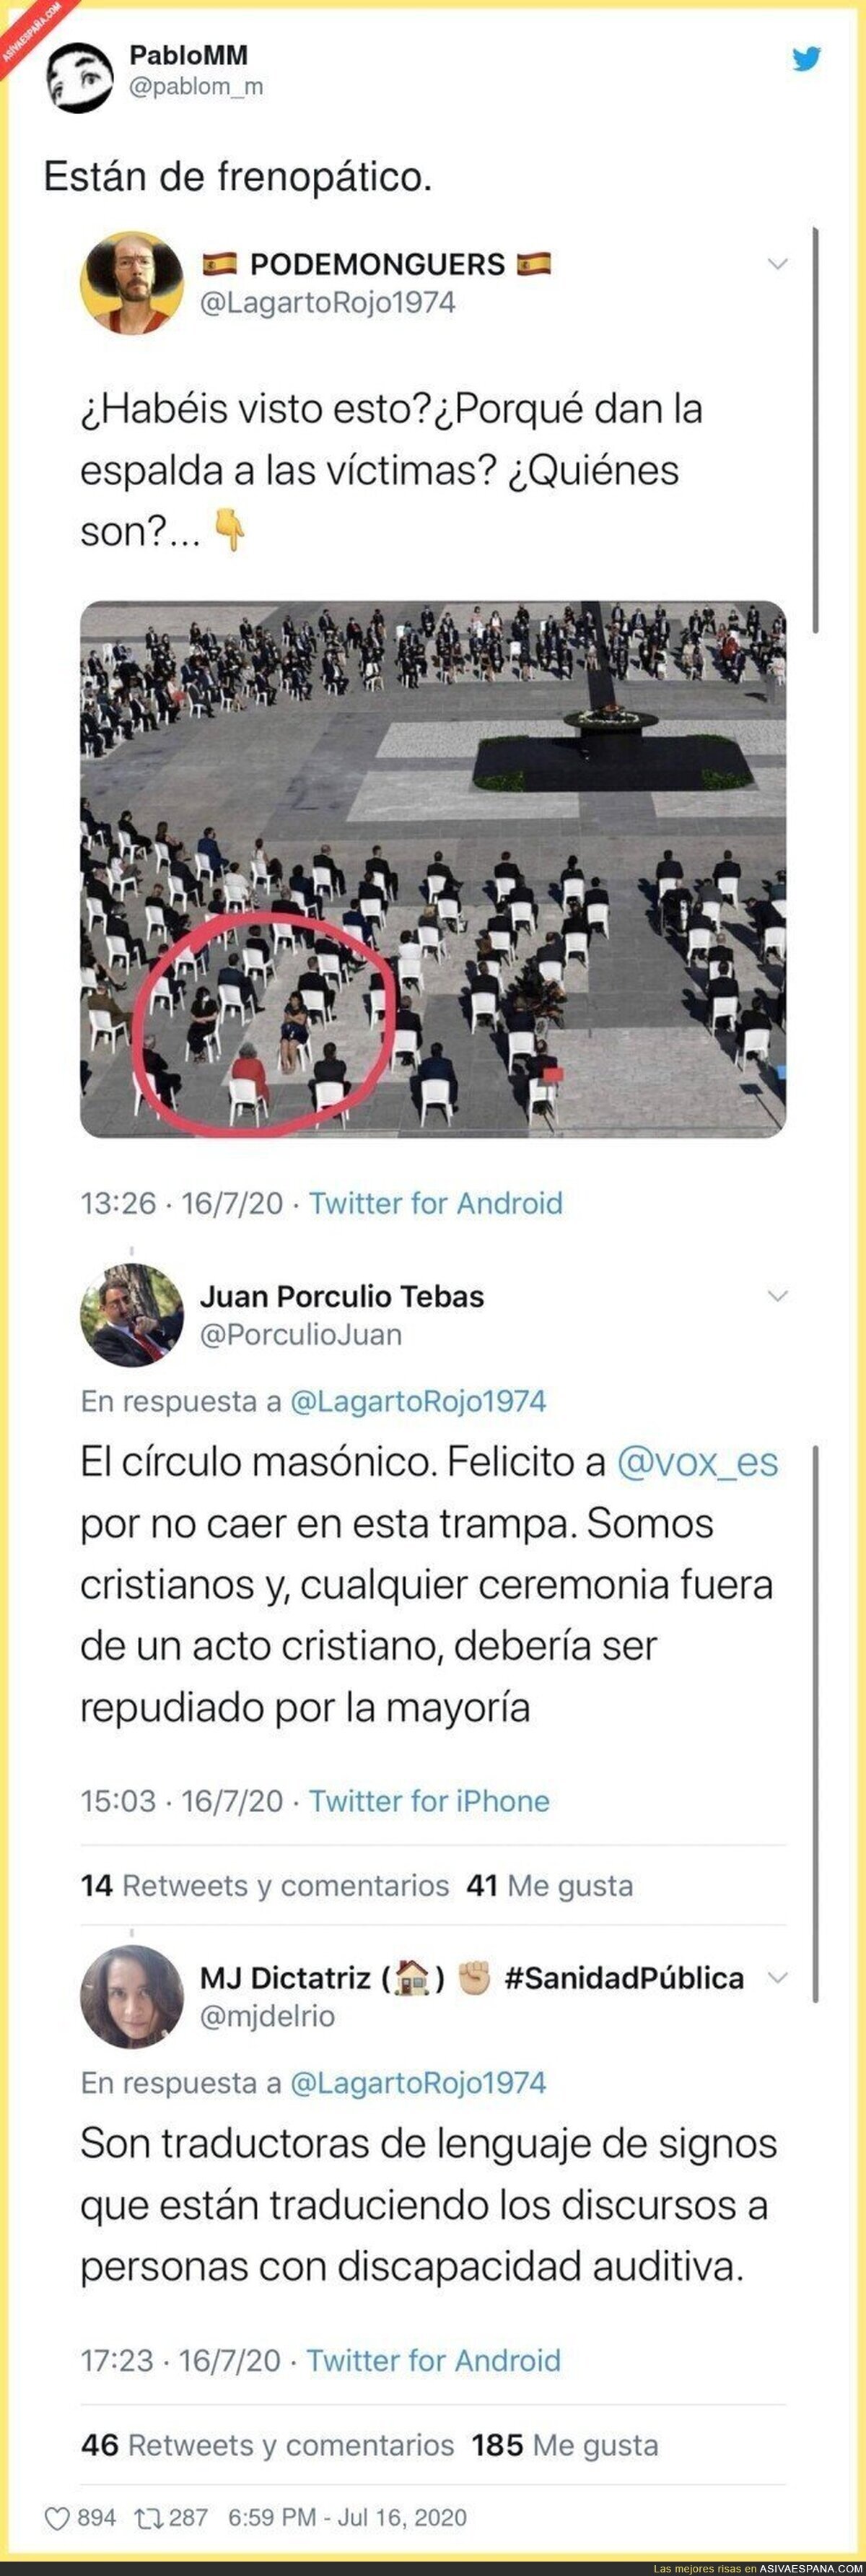 Este fascista se monta una conspiración al ver esta imagen del funeral de estado y la explicación le deja por los suelos